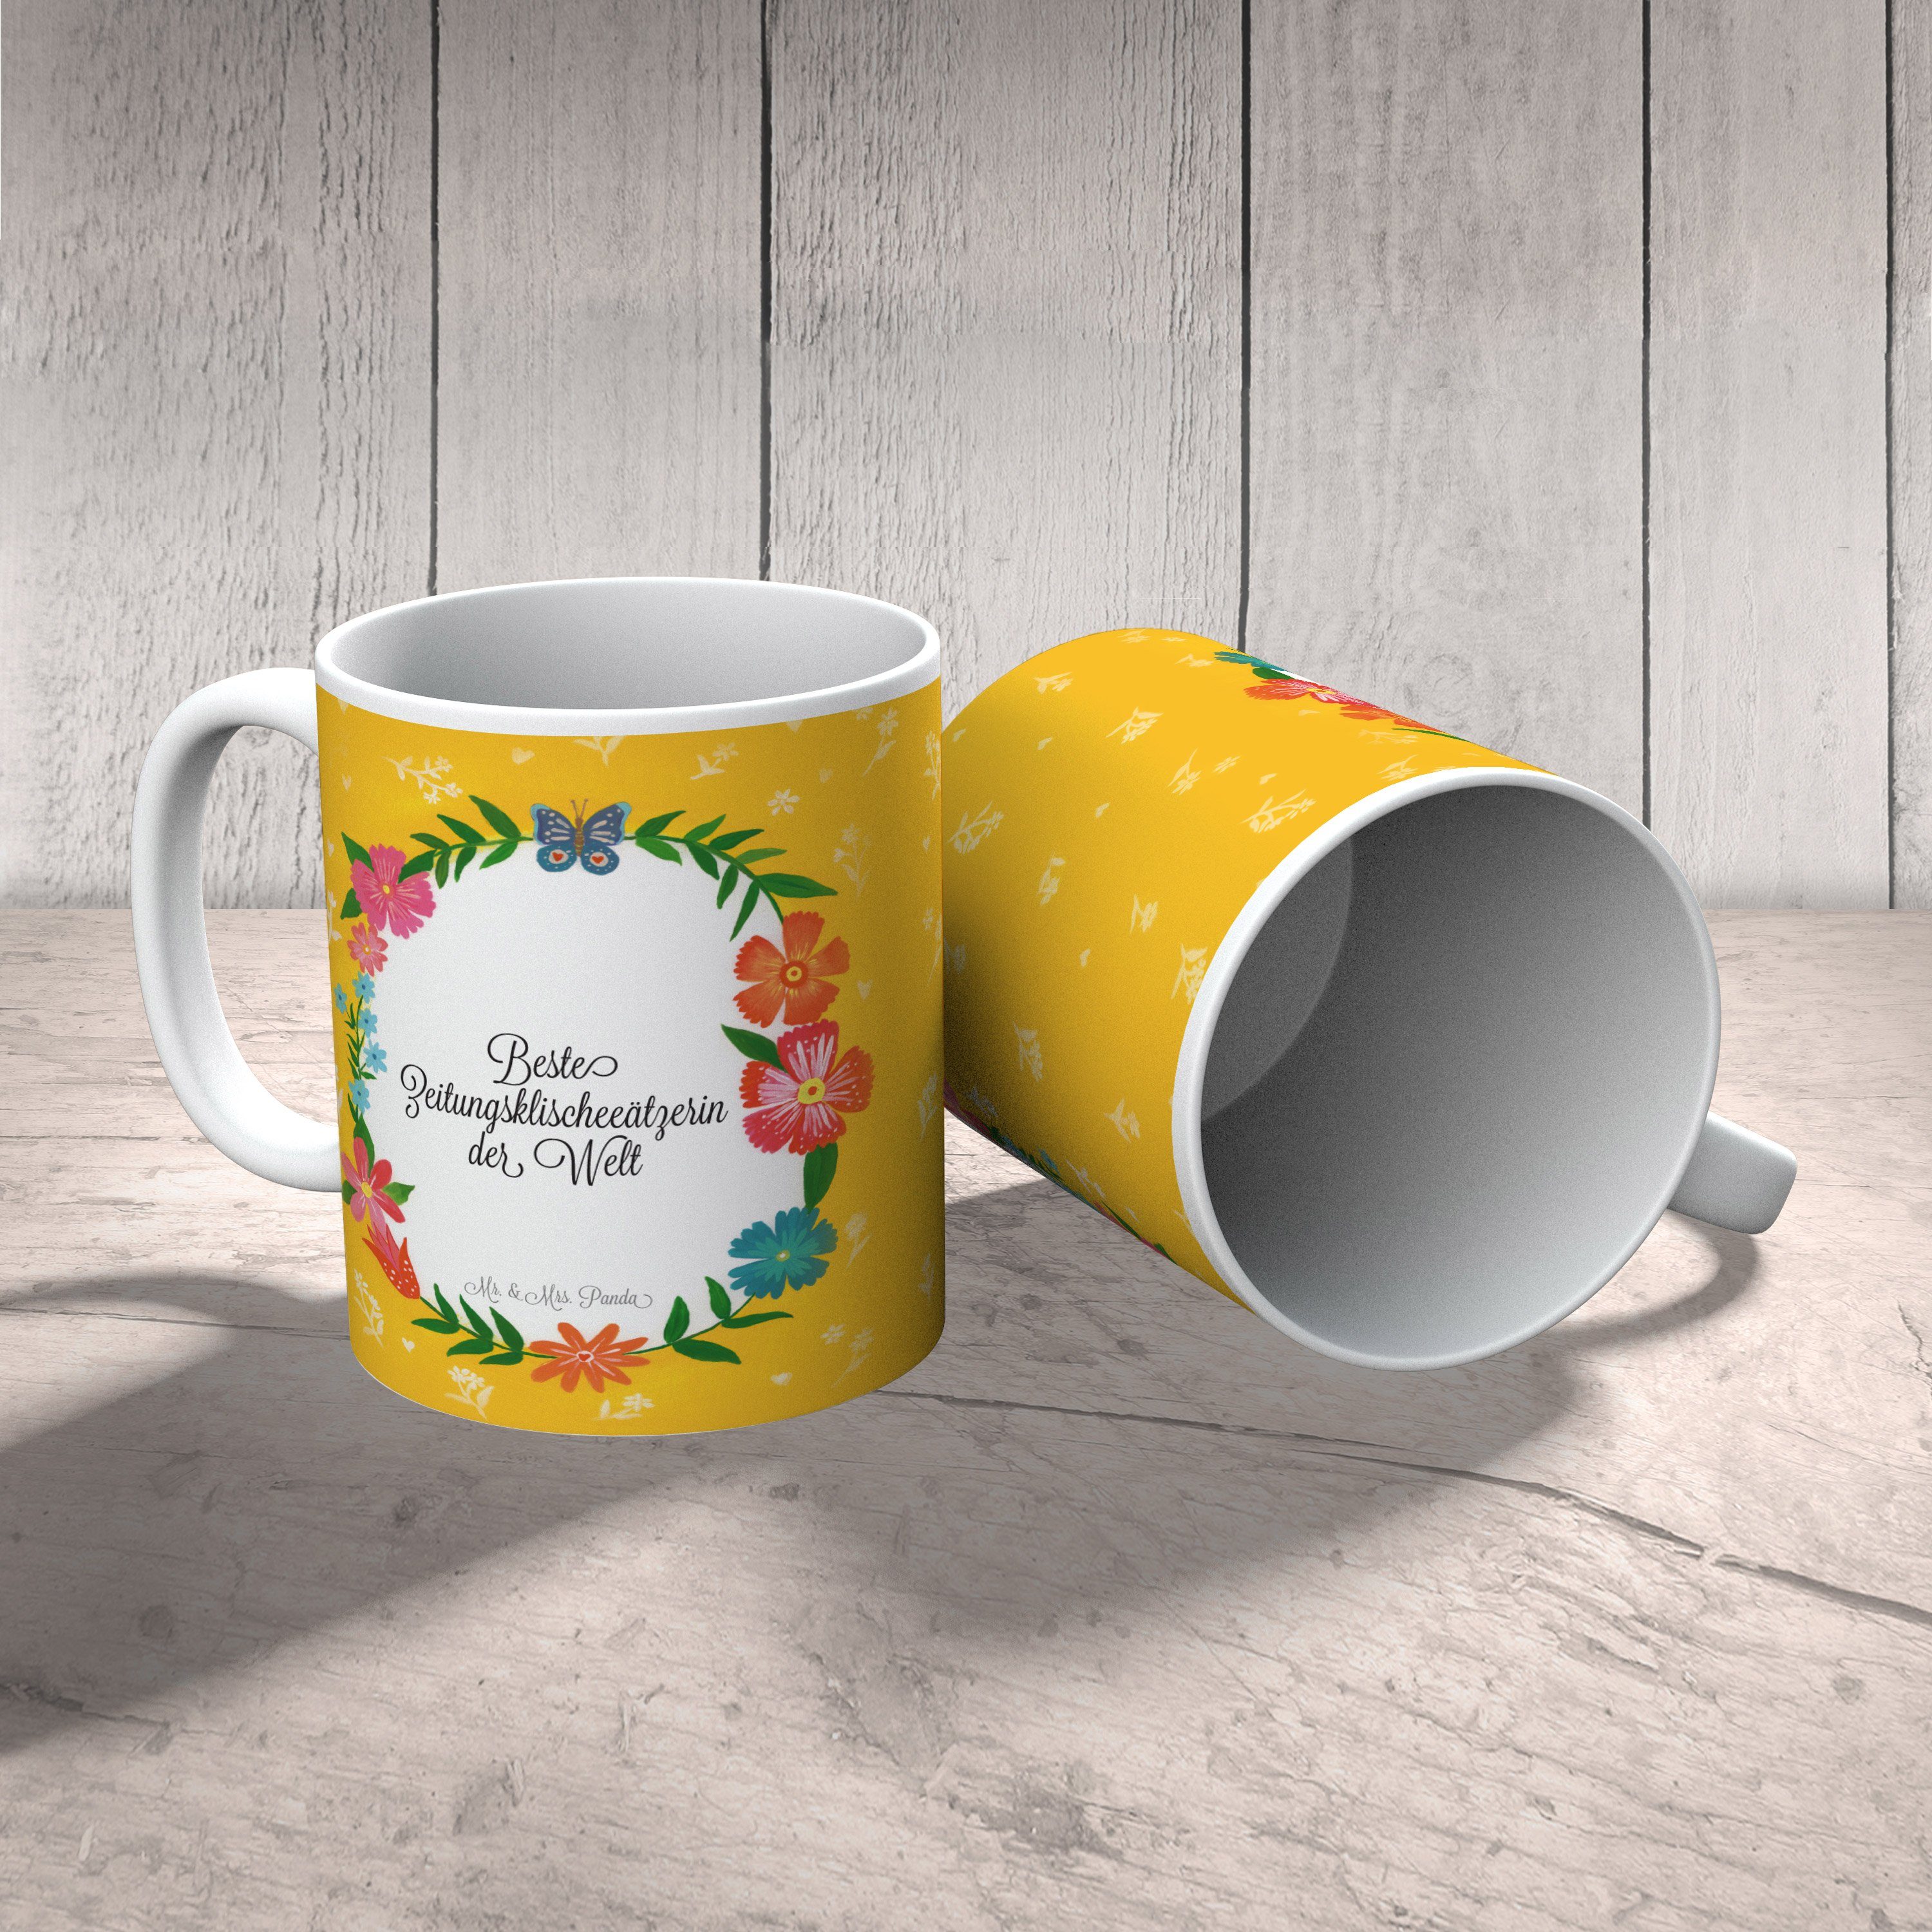 Mr. & Mrs. Panda Tasse Tasse, Rente, Motive, Kaffe, Geschenk, Zeitungsklischeeätzerin Tasse Keramik 